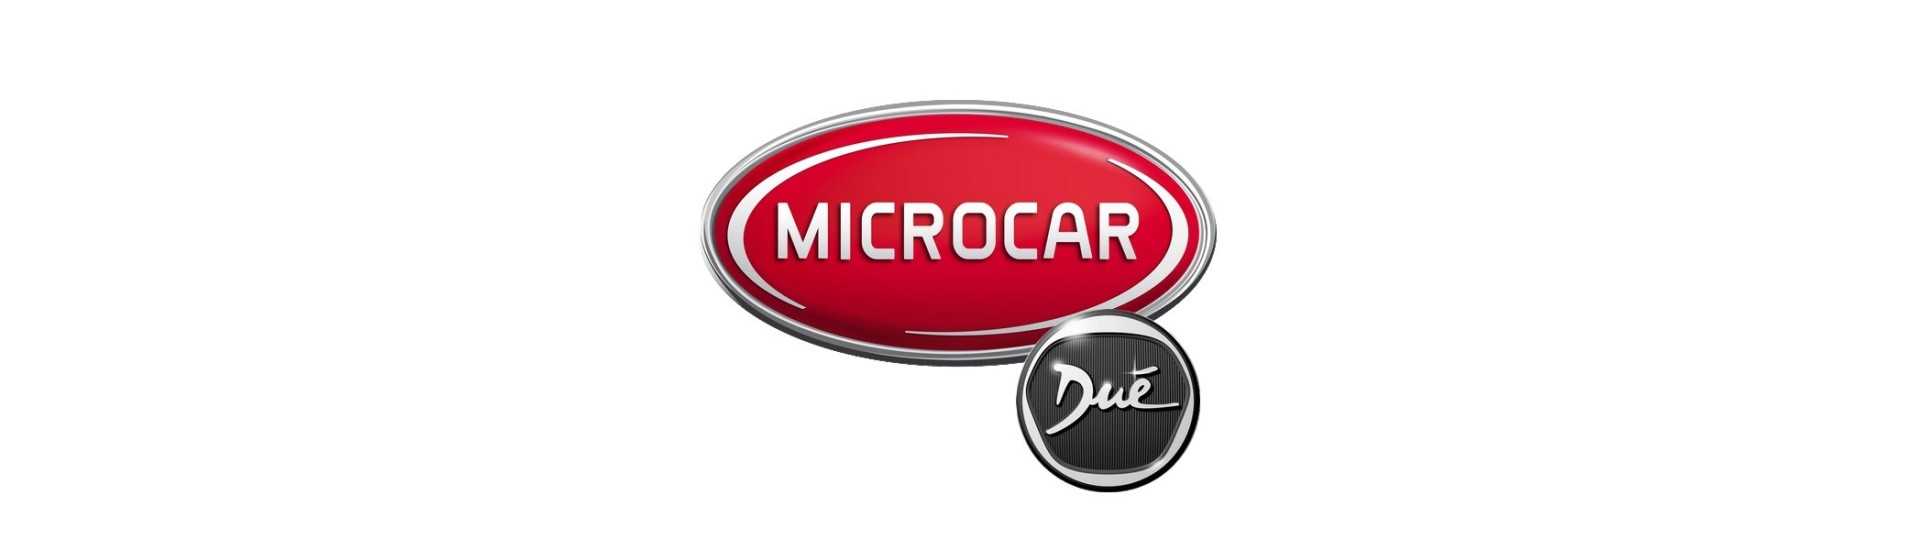 Parhaan hinnan muovi ilman lupaa Microcar Dué